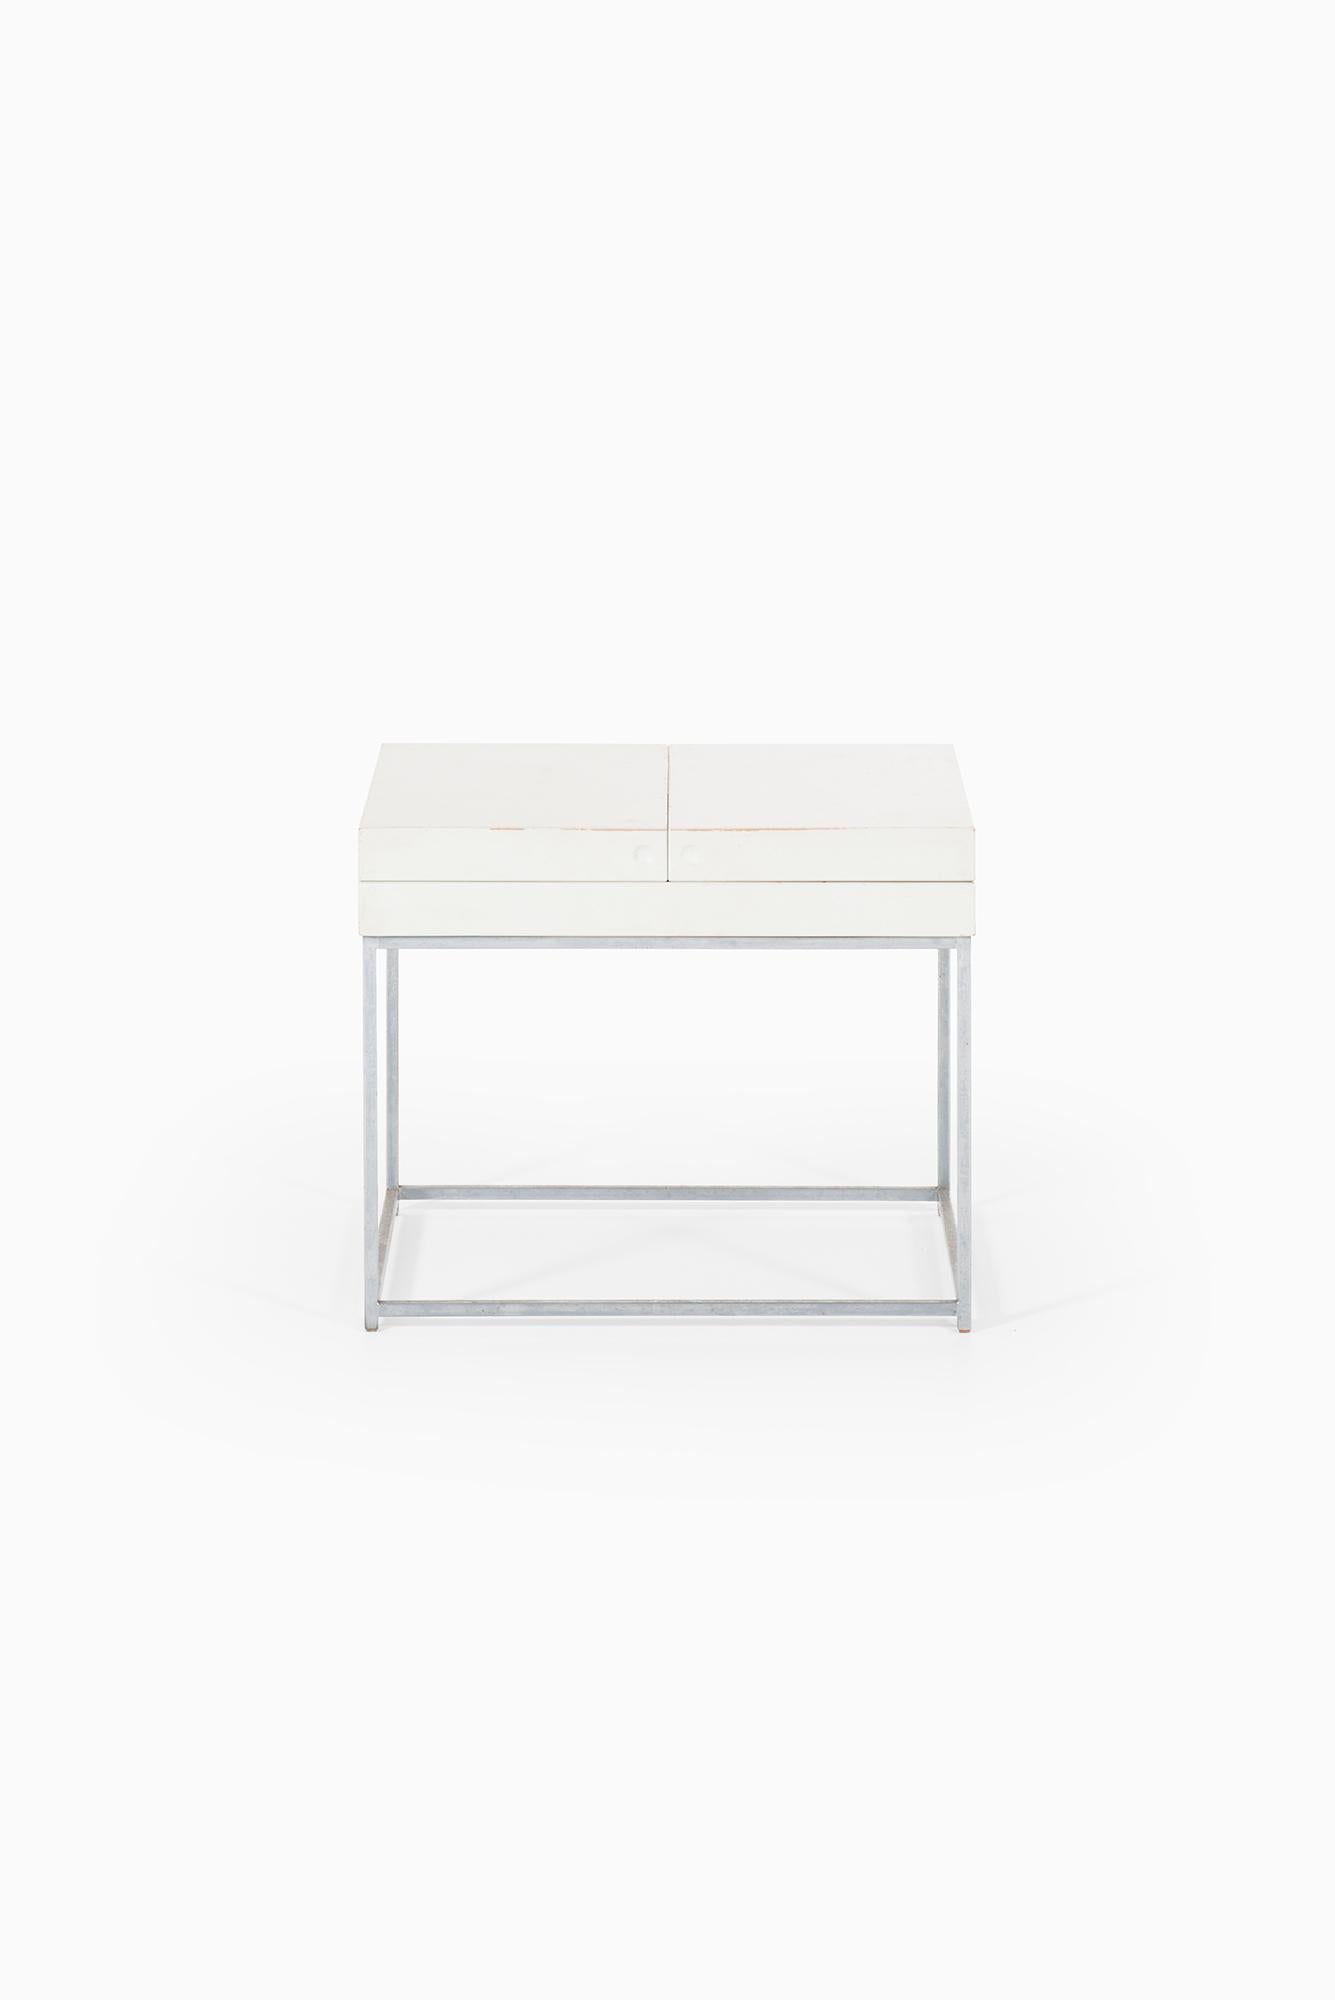 Table d'appoint en acier et bois laqué blanc conçue par Poul Nørreklit. Produit par Selectform au Danemark.